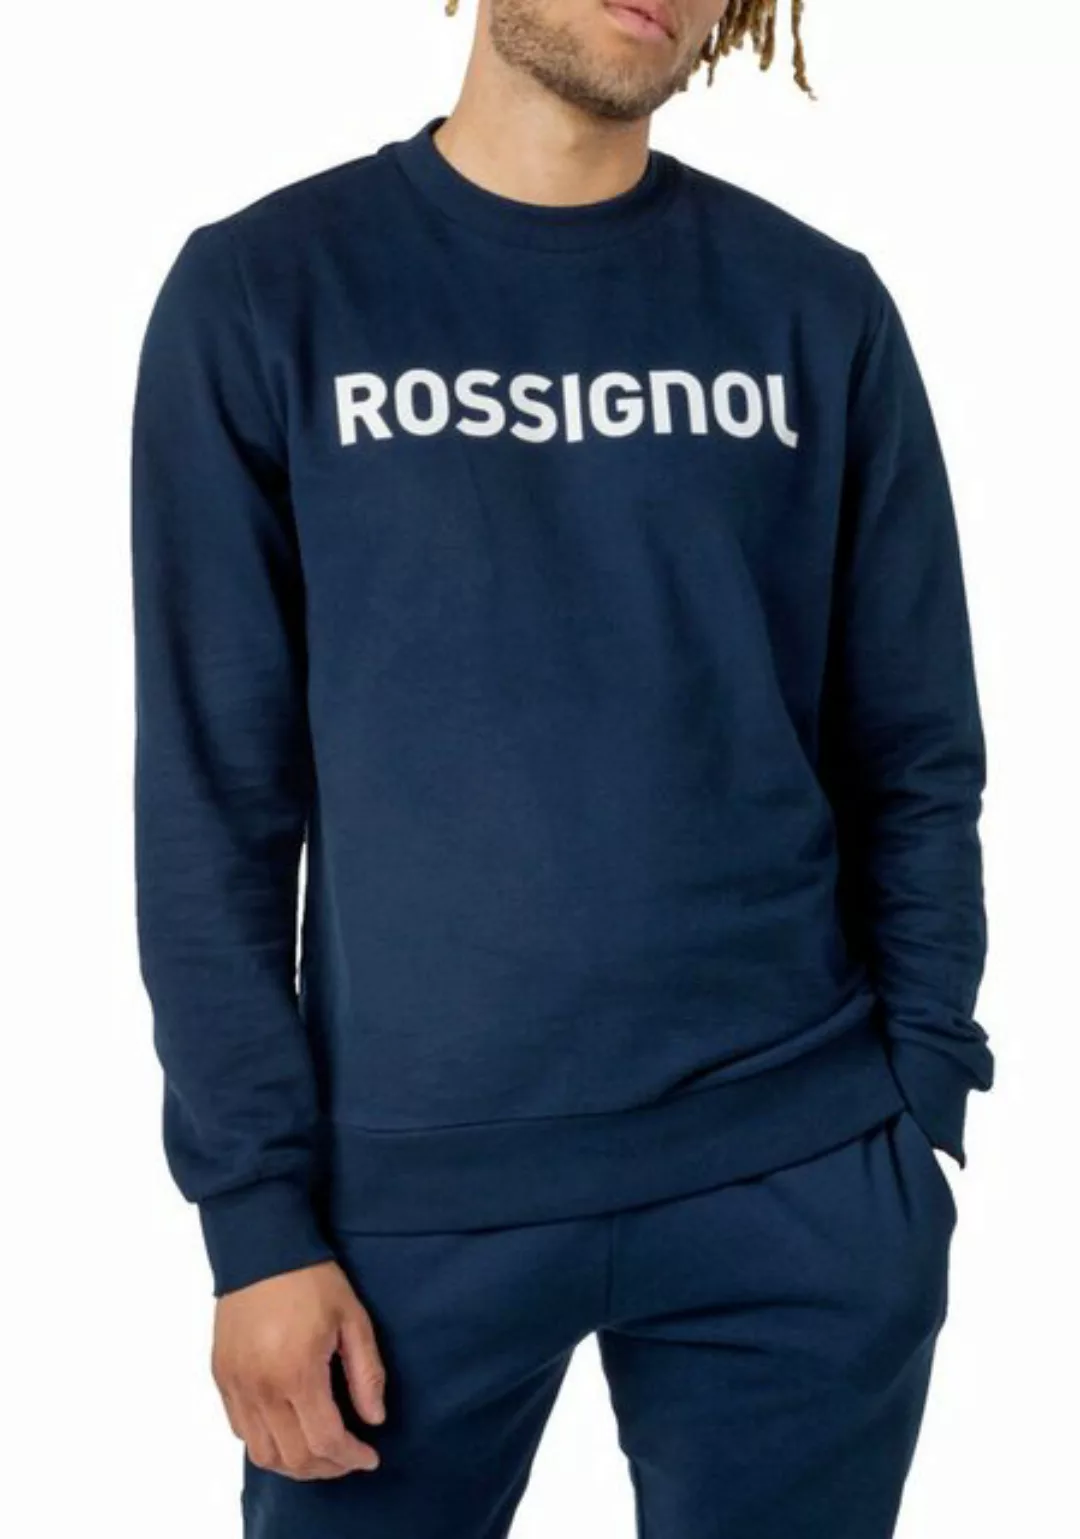 Rossignol Sweatshirt Sweatshirt Pullover Pulli Jumper Sport Logo Sweater günstig online kaufen